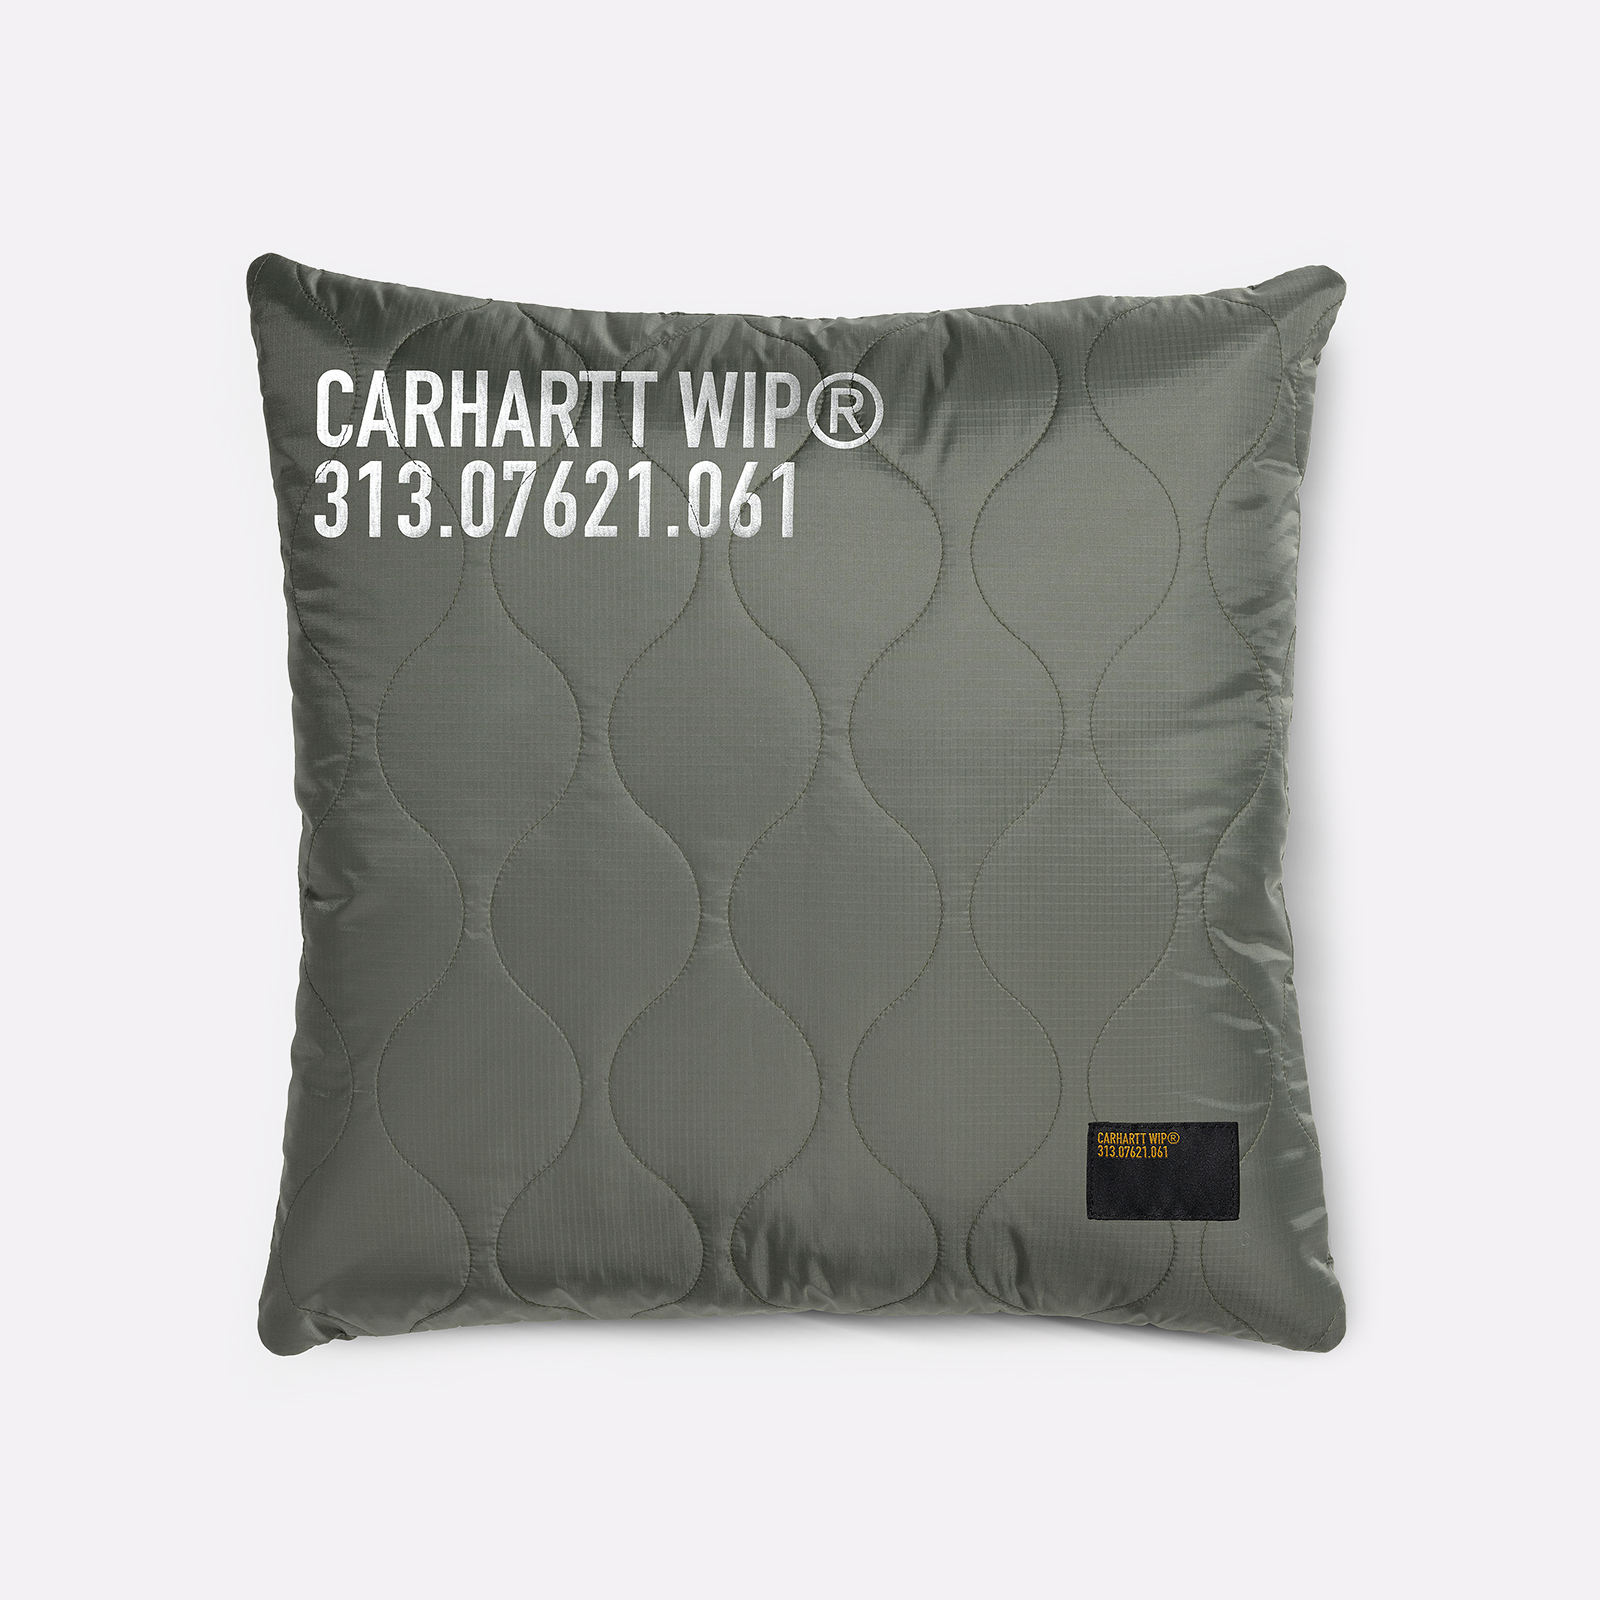  зеленая подушка Carhartt WIP Tour Quilted Pillow I032491-green/ref - цена, описание, фото 1